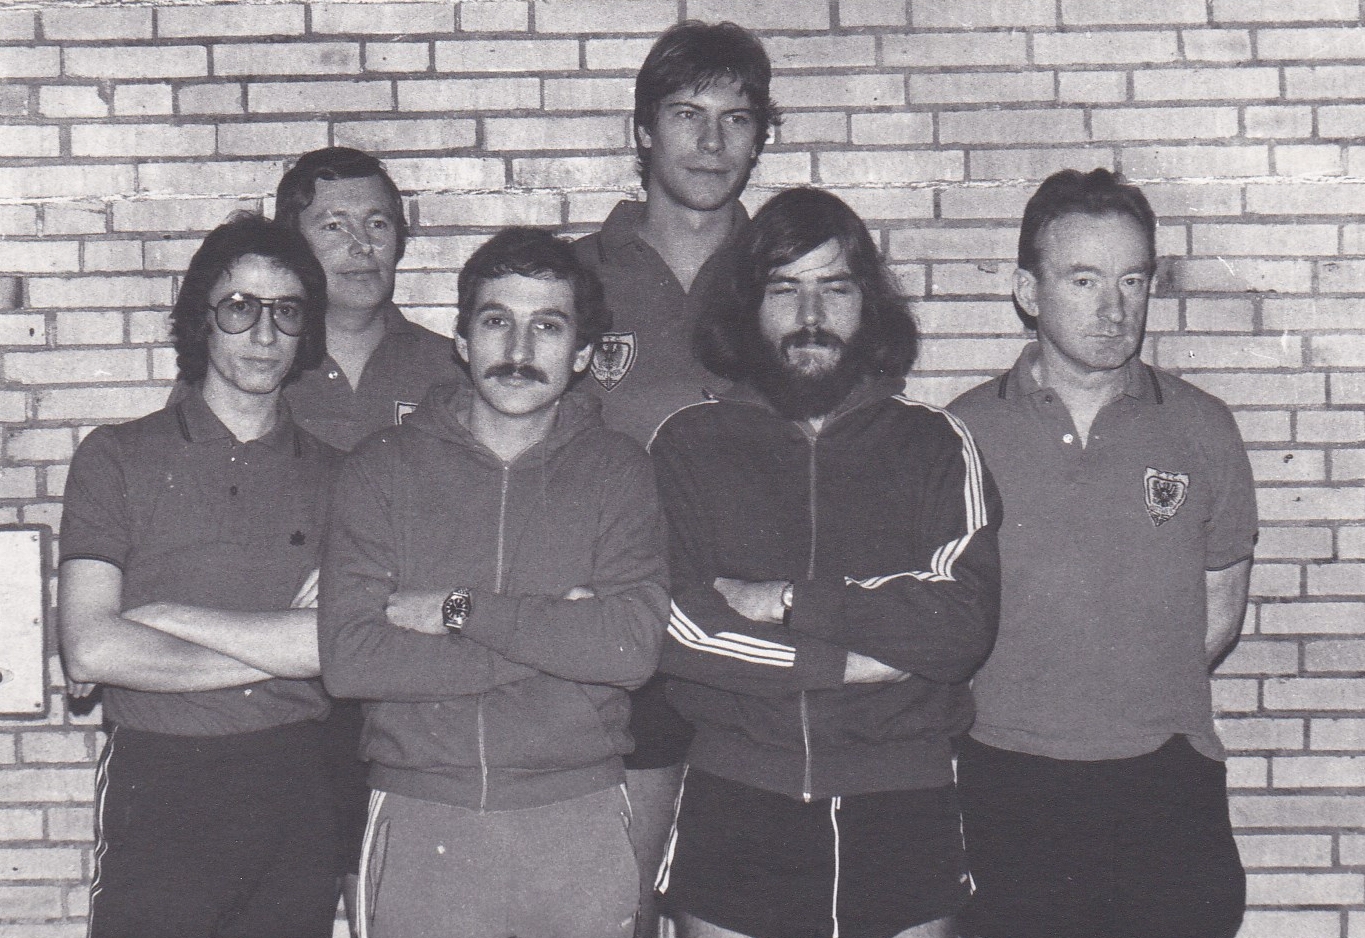 Herren 2 VR 1976/77. Von links: Bacher, Krieg, Gerstner, Hölle, Mutscheller, Wehrmann